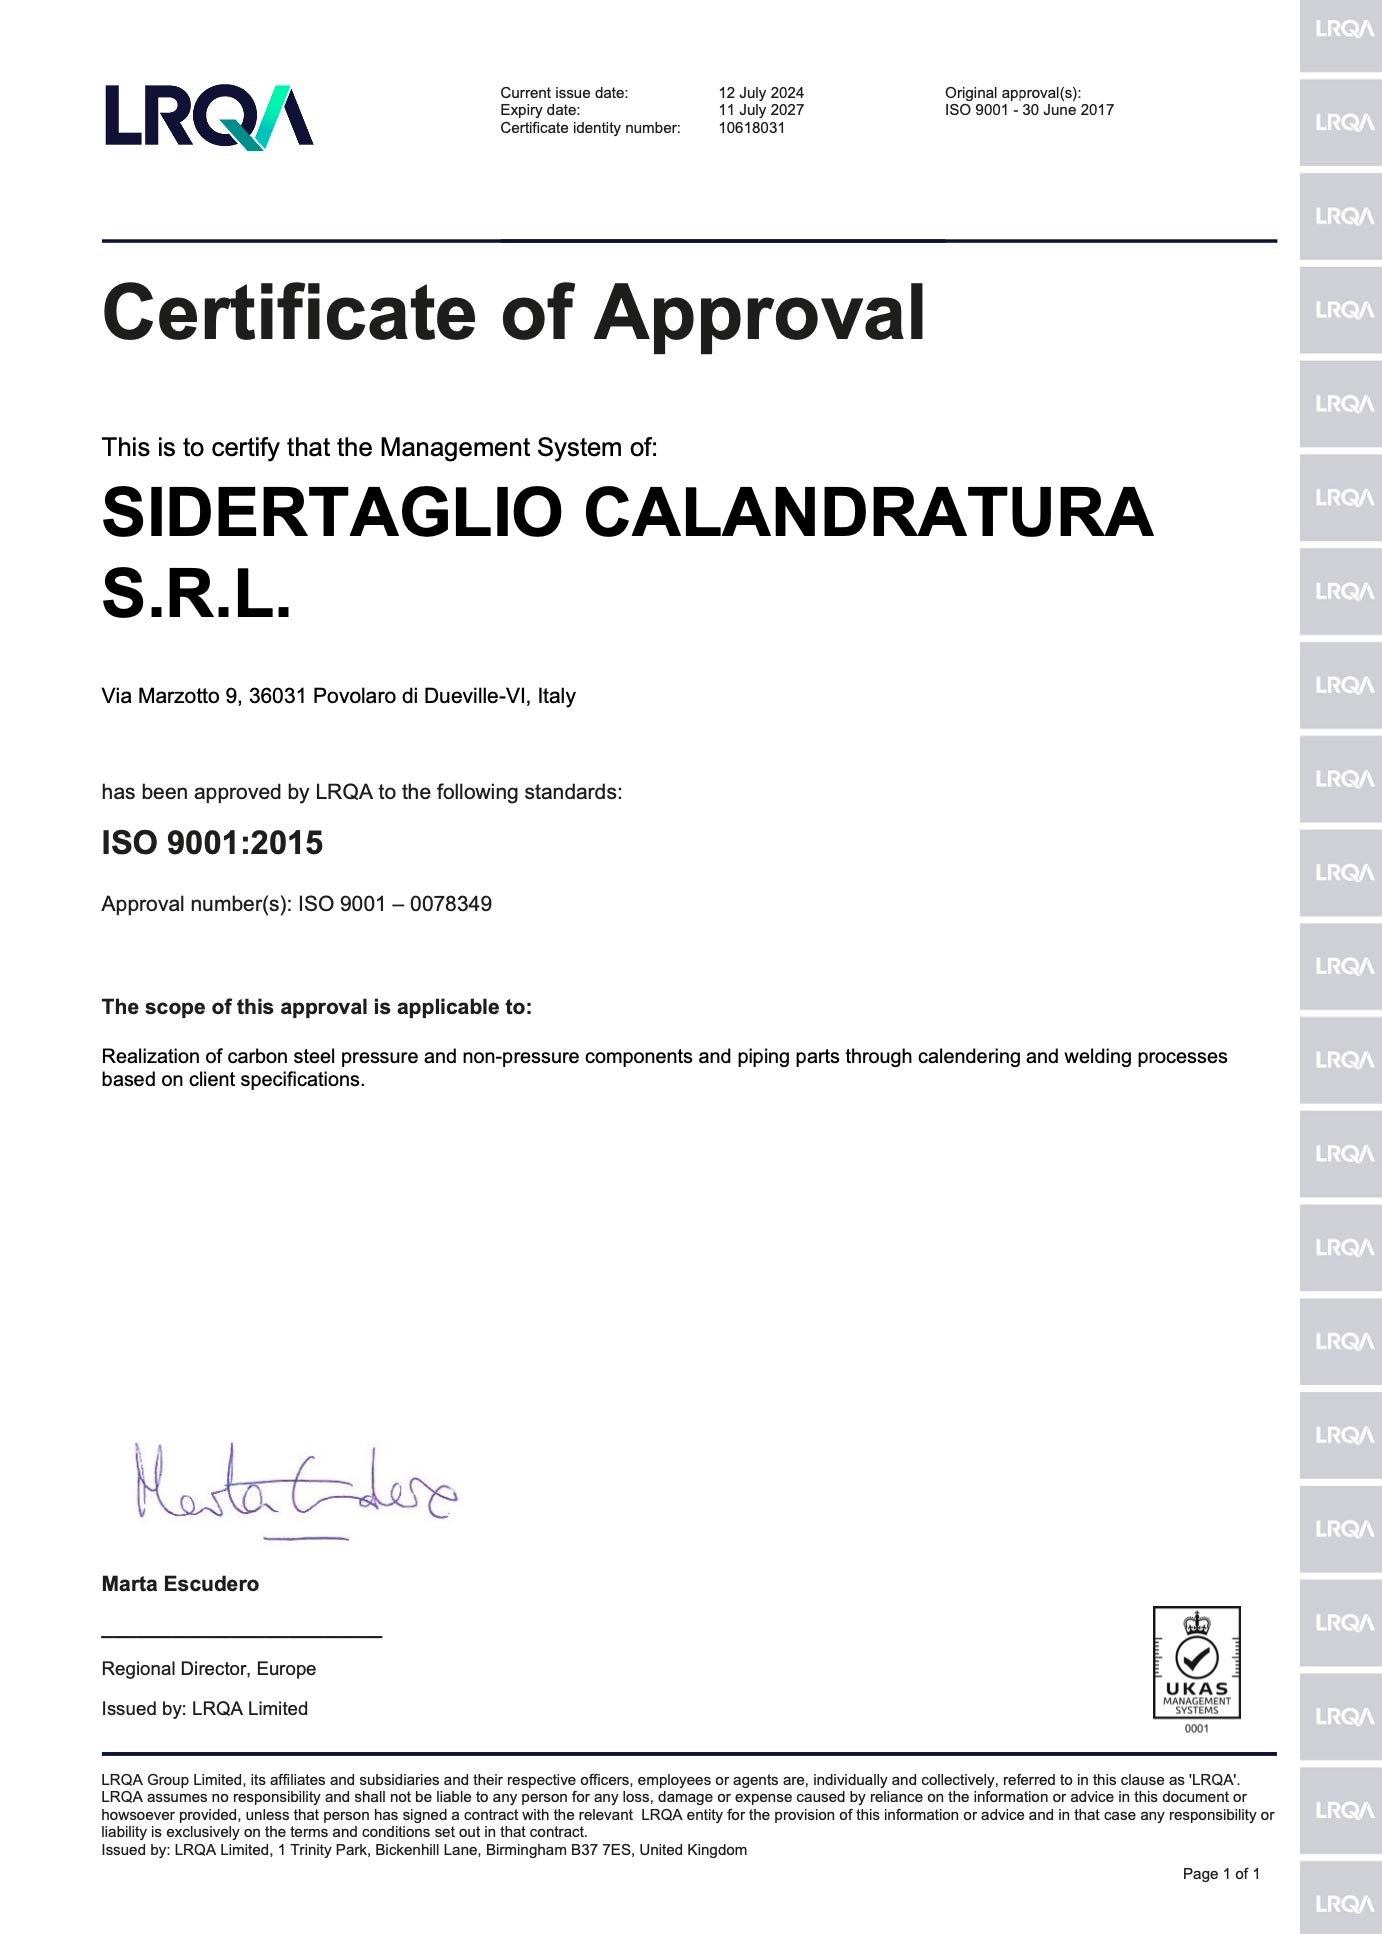 Sidertaglio Calandratura certifications. The iso-9001